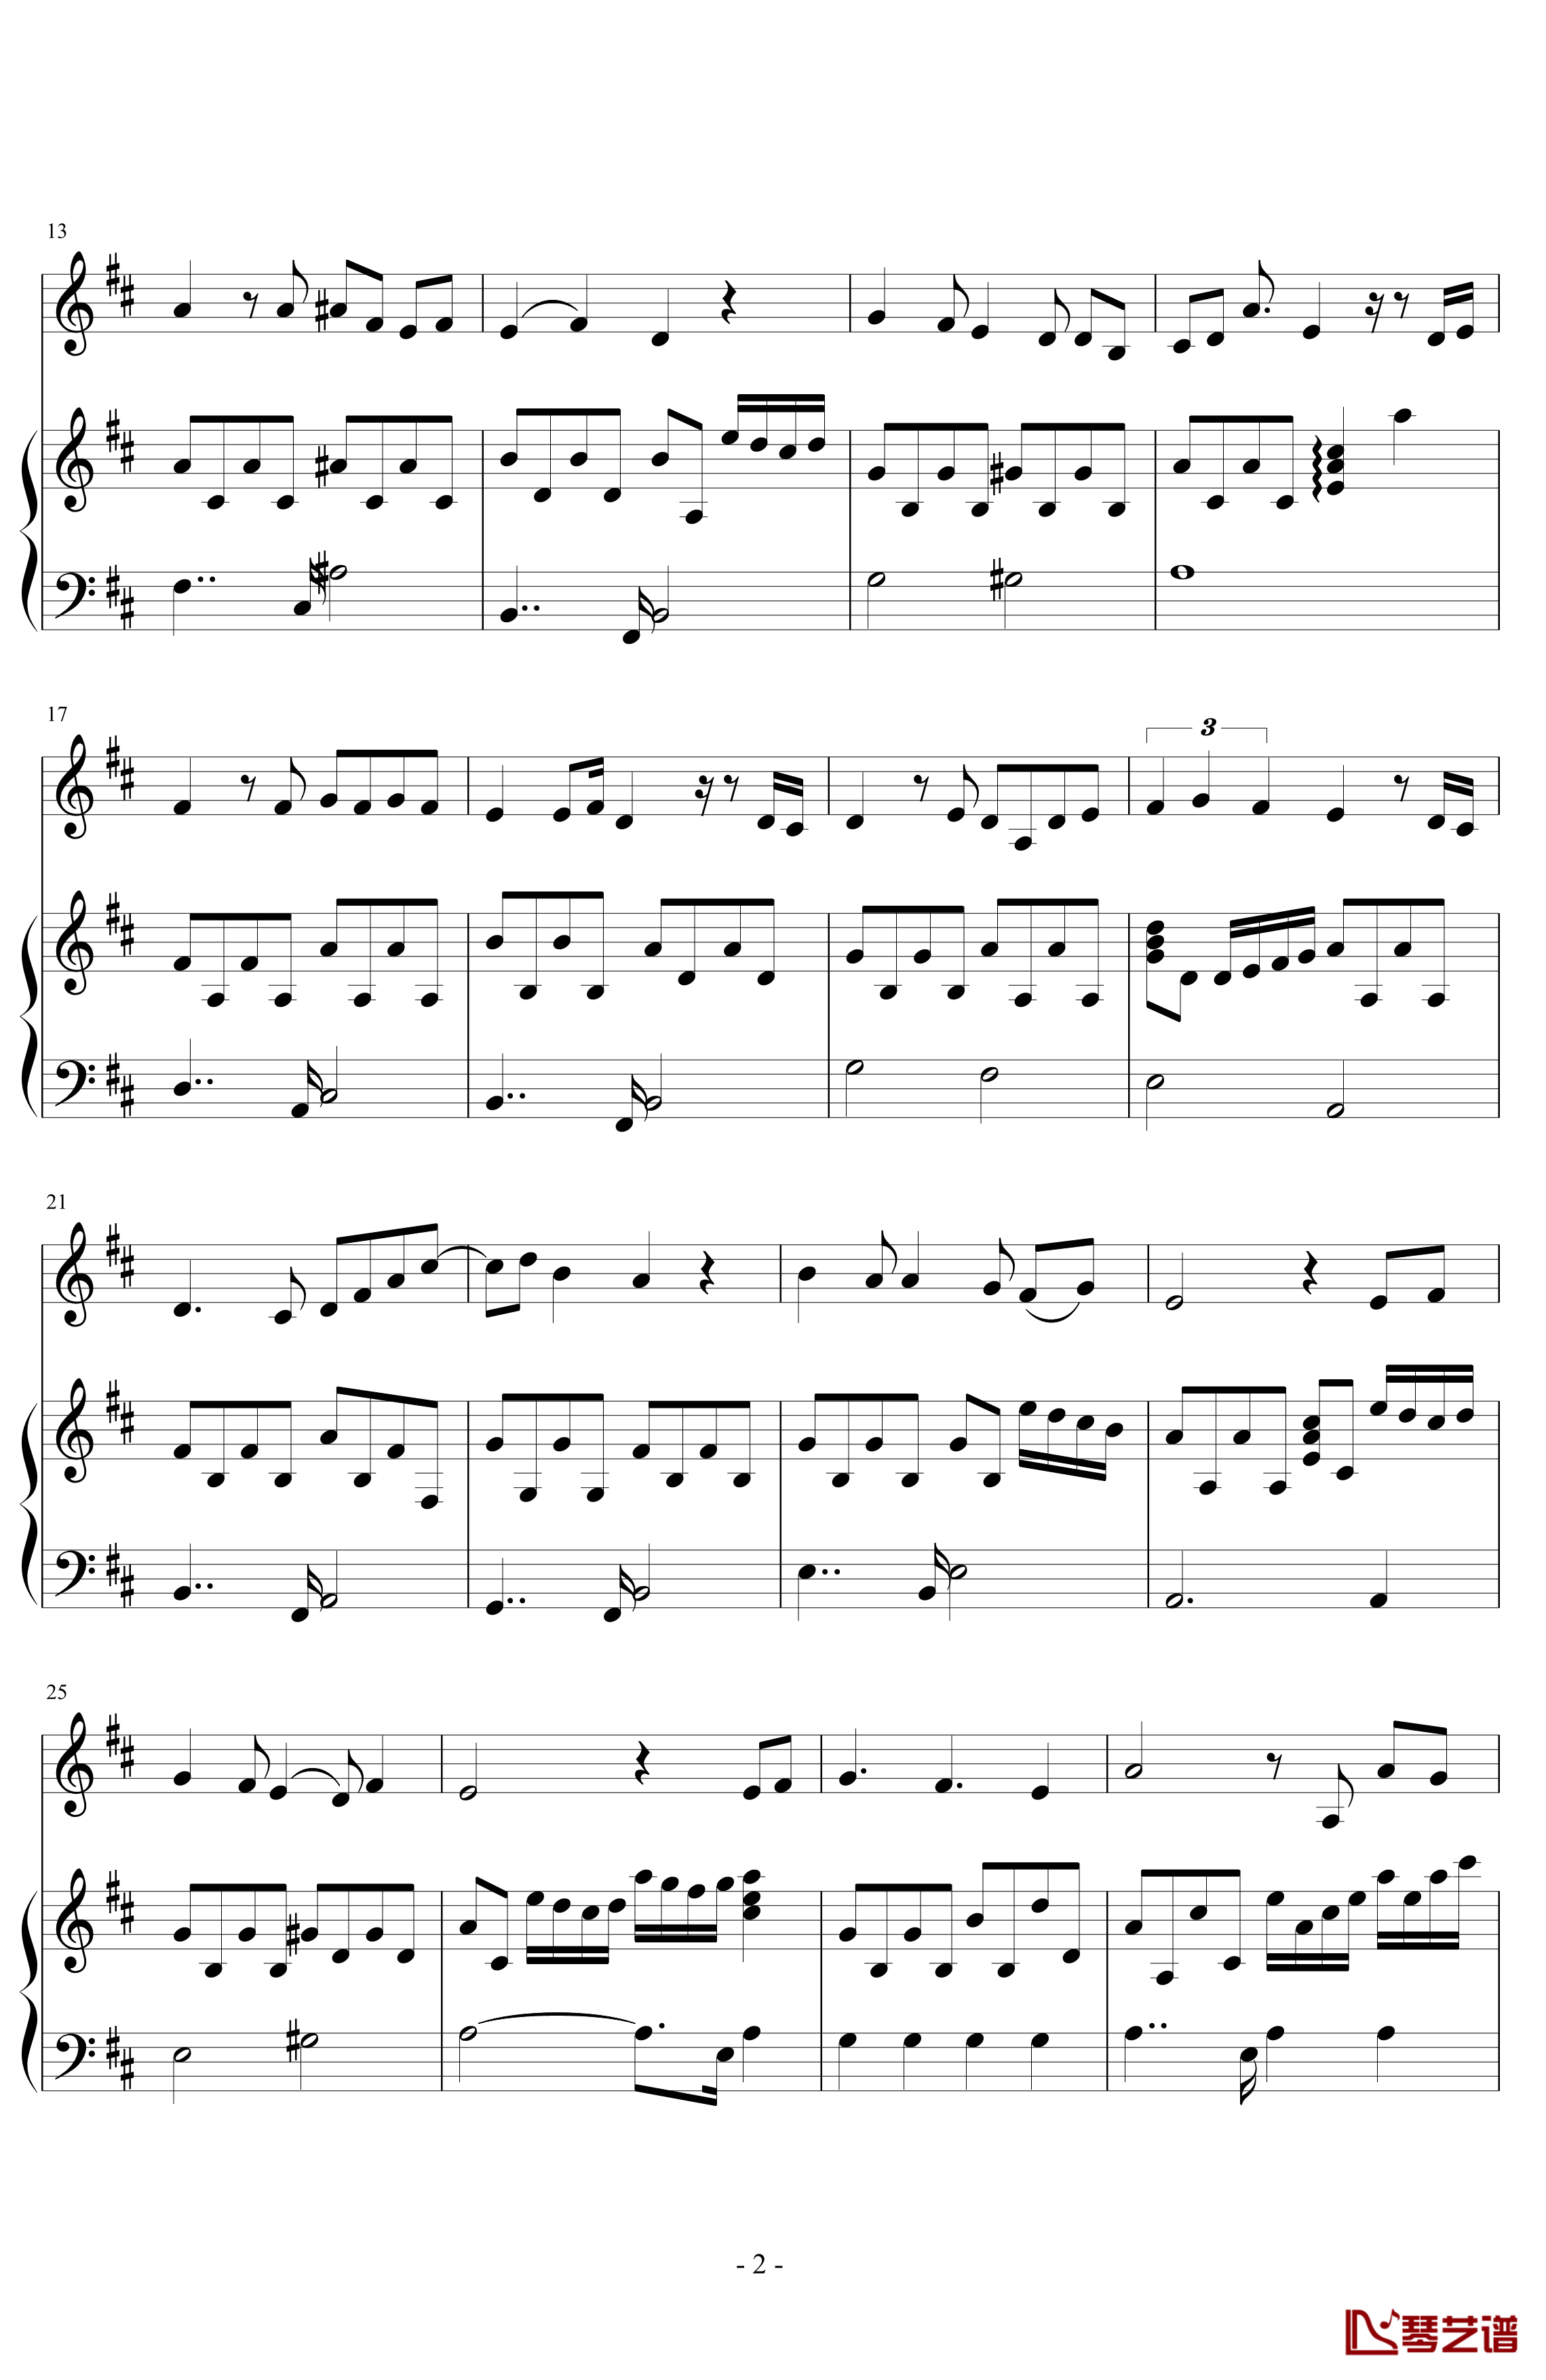 三年级二班钢琴谱-潇洒星空2